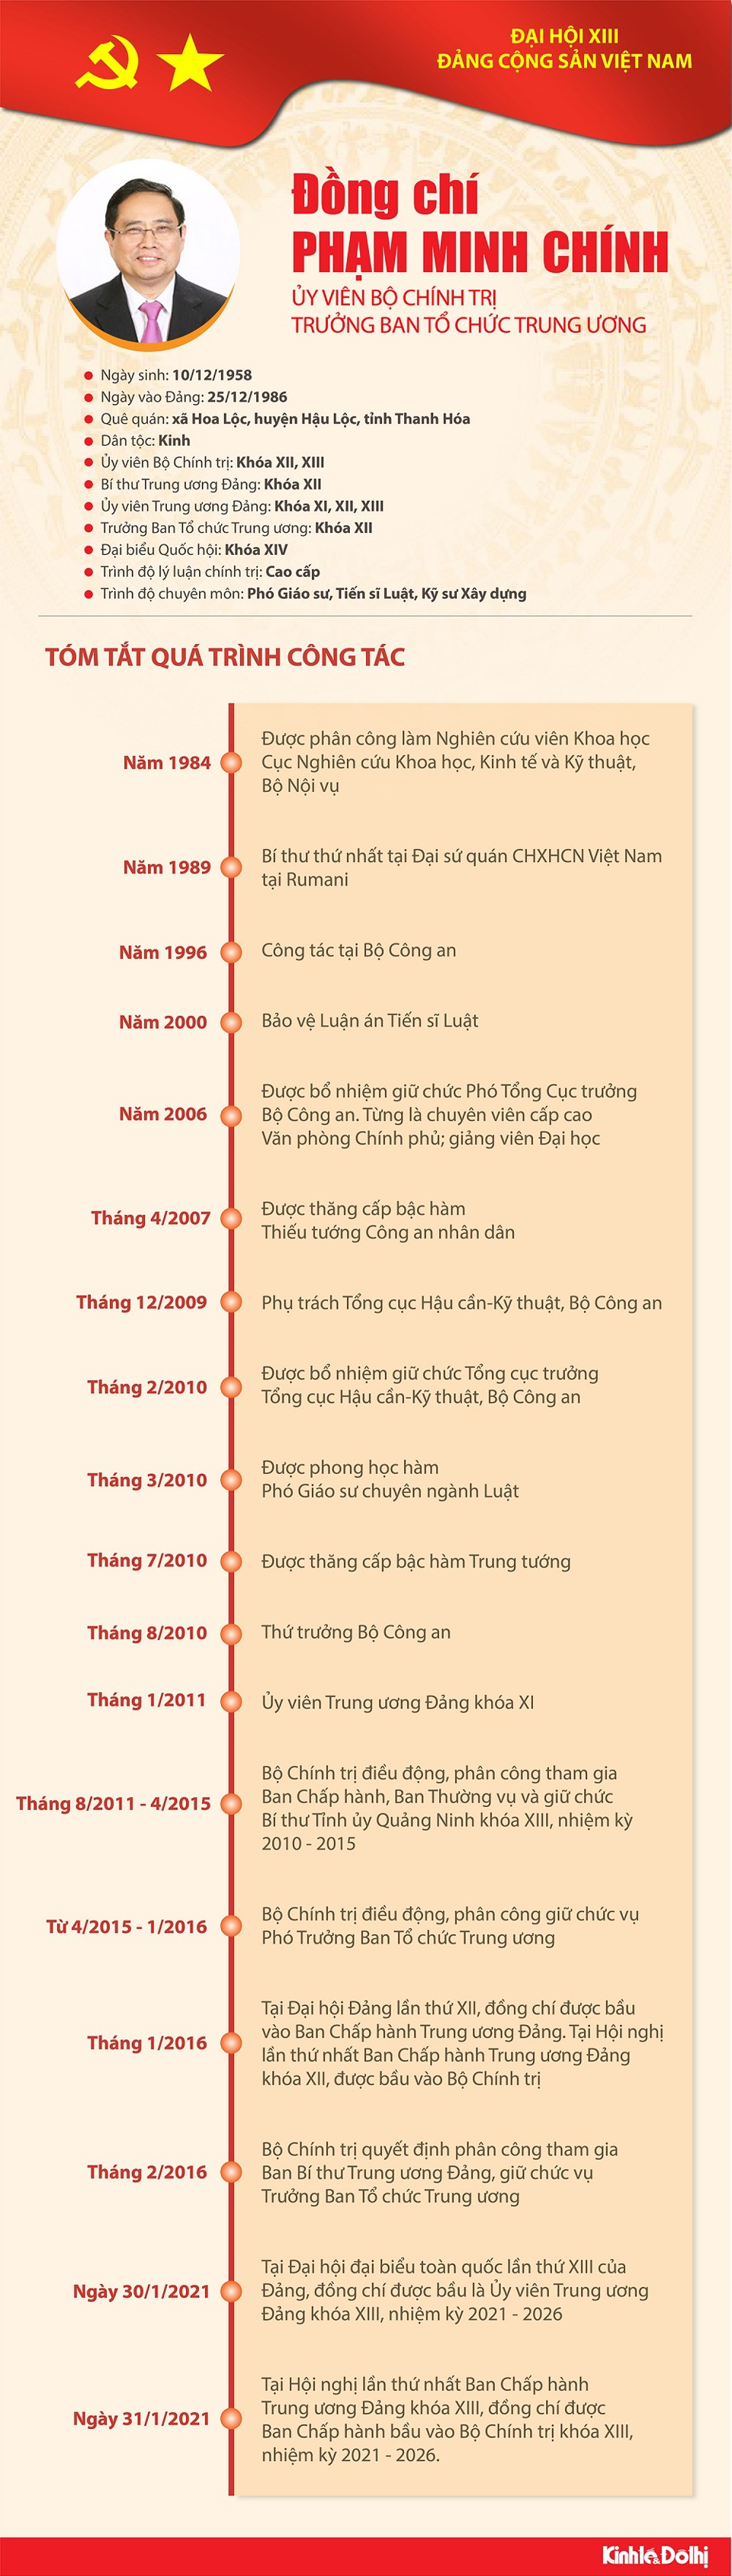 [Infographic] Quá trình công tác Ủy viên Bộ Chính trị Phạm Minh Chính - Ảnh 1